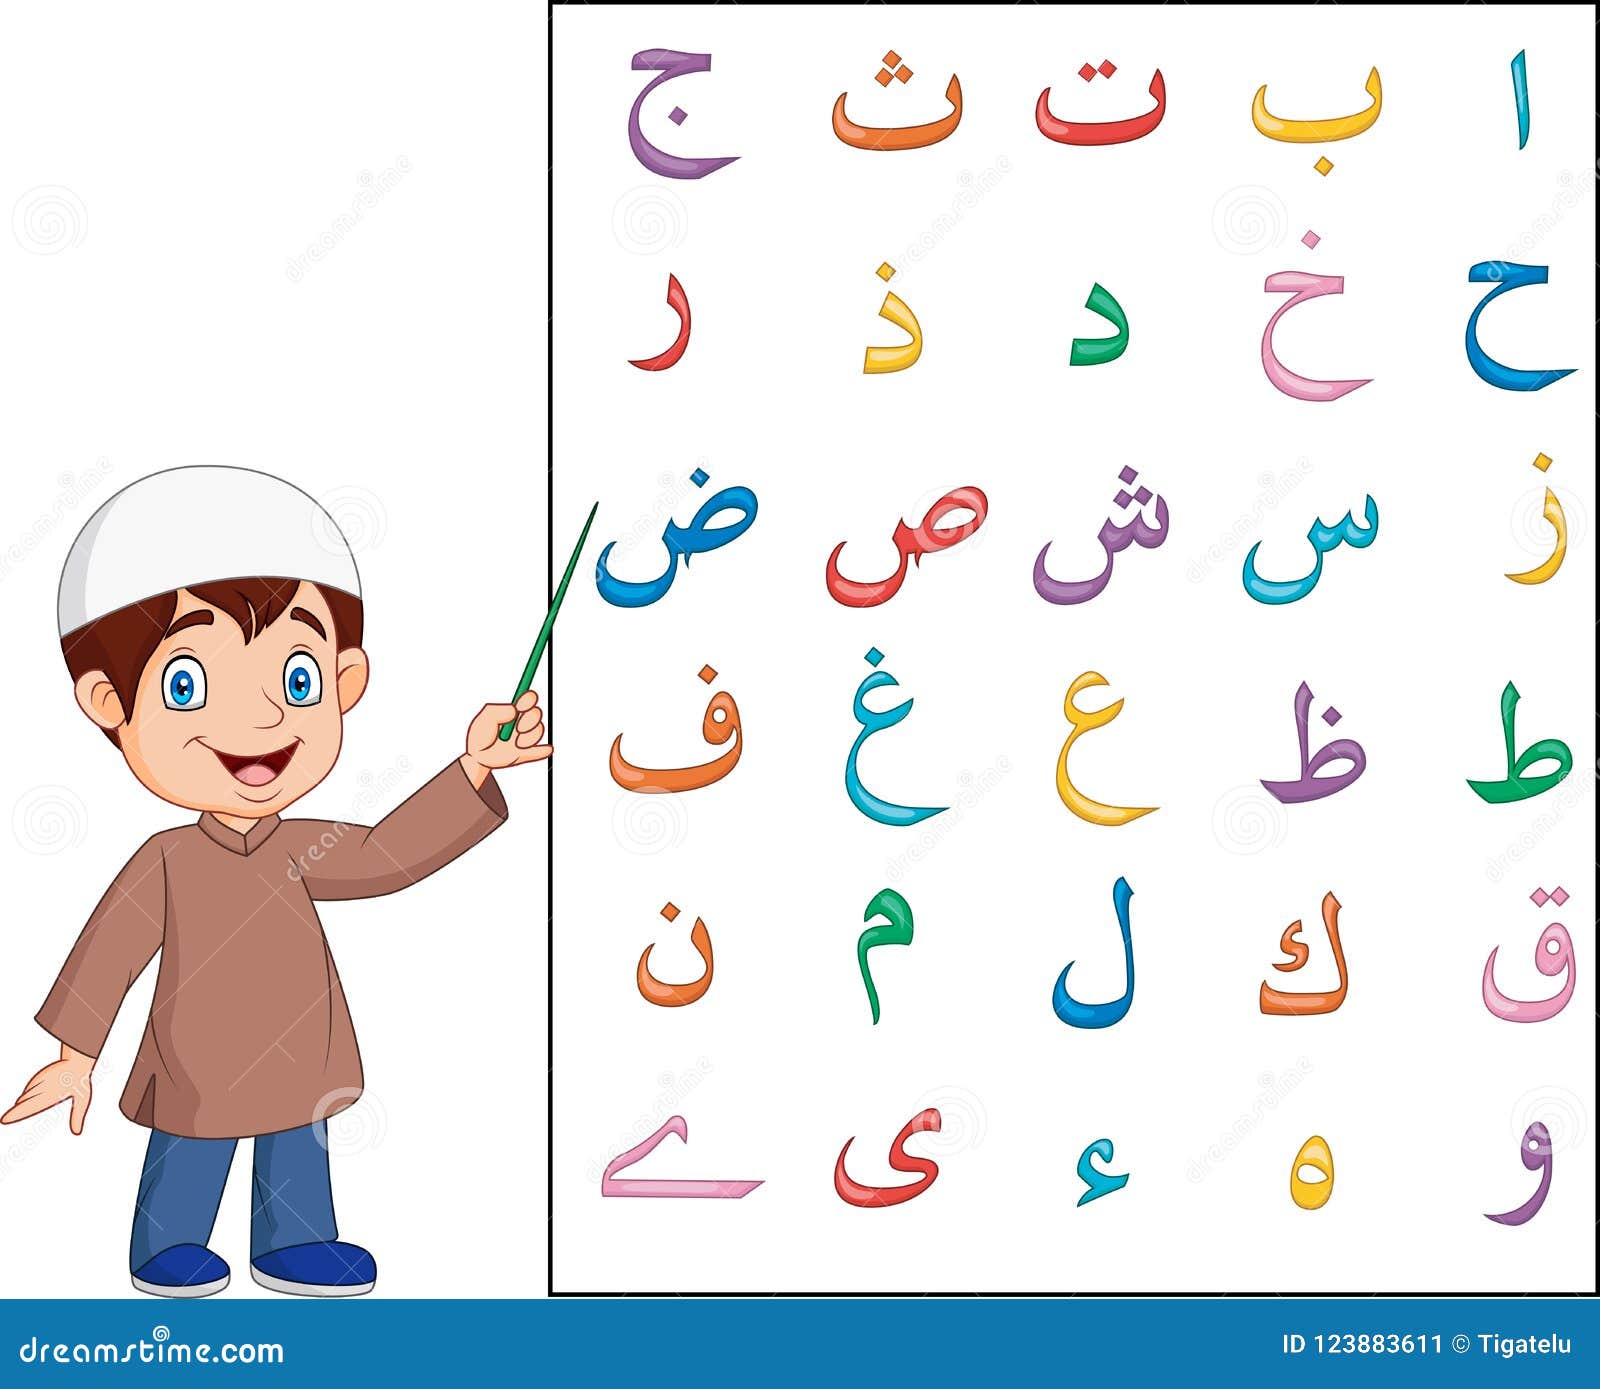 Учиться арабскому языку. Арабский алфавит Алиф. Арабский алфавит с Хамзой. Изучение арабского алфавита для детей. Арабские буквы для детей.